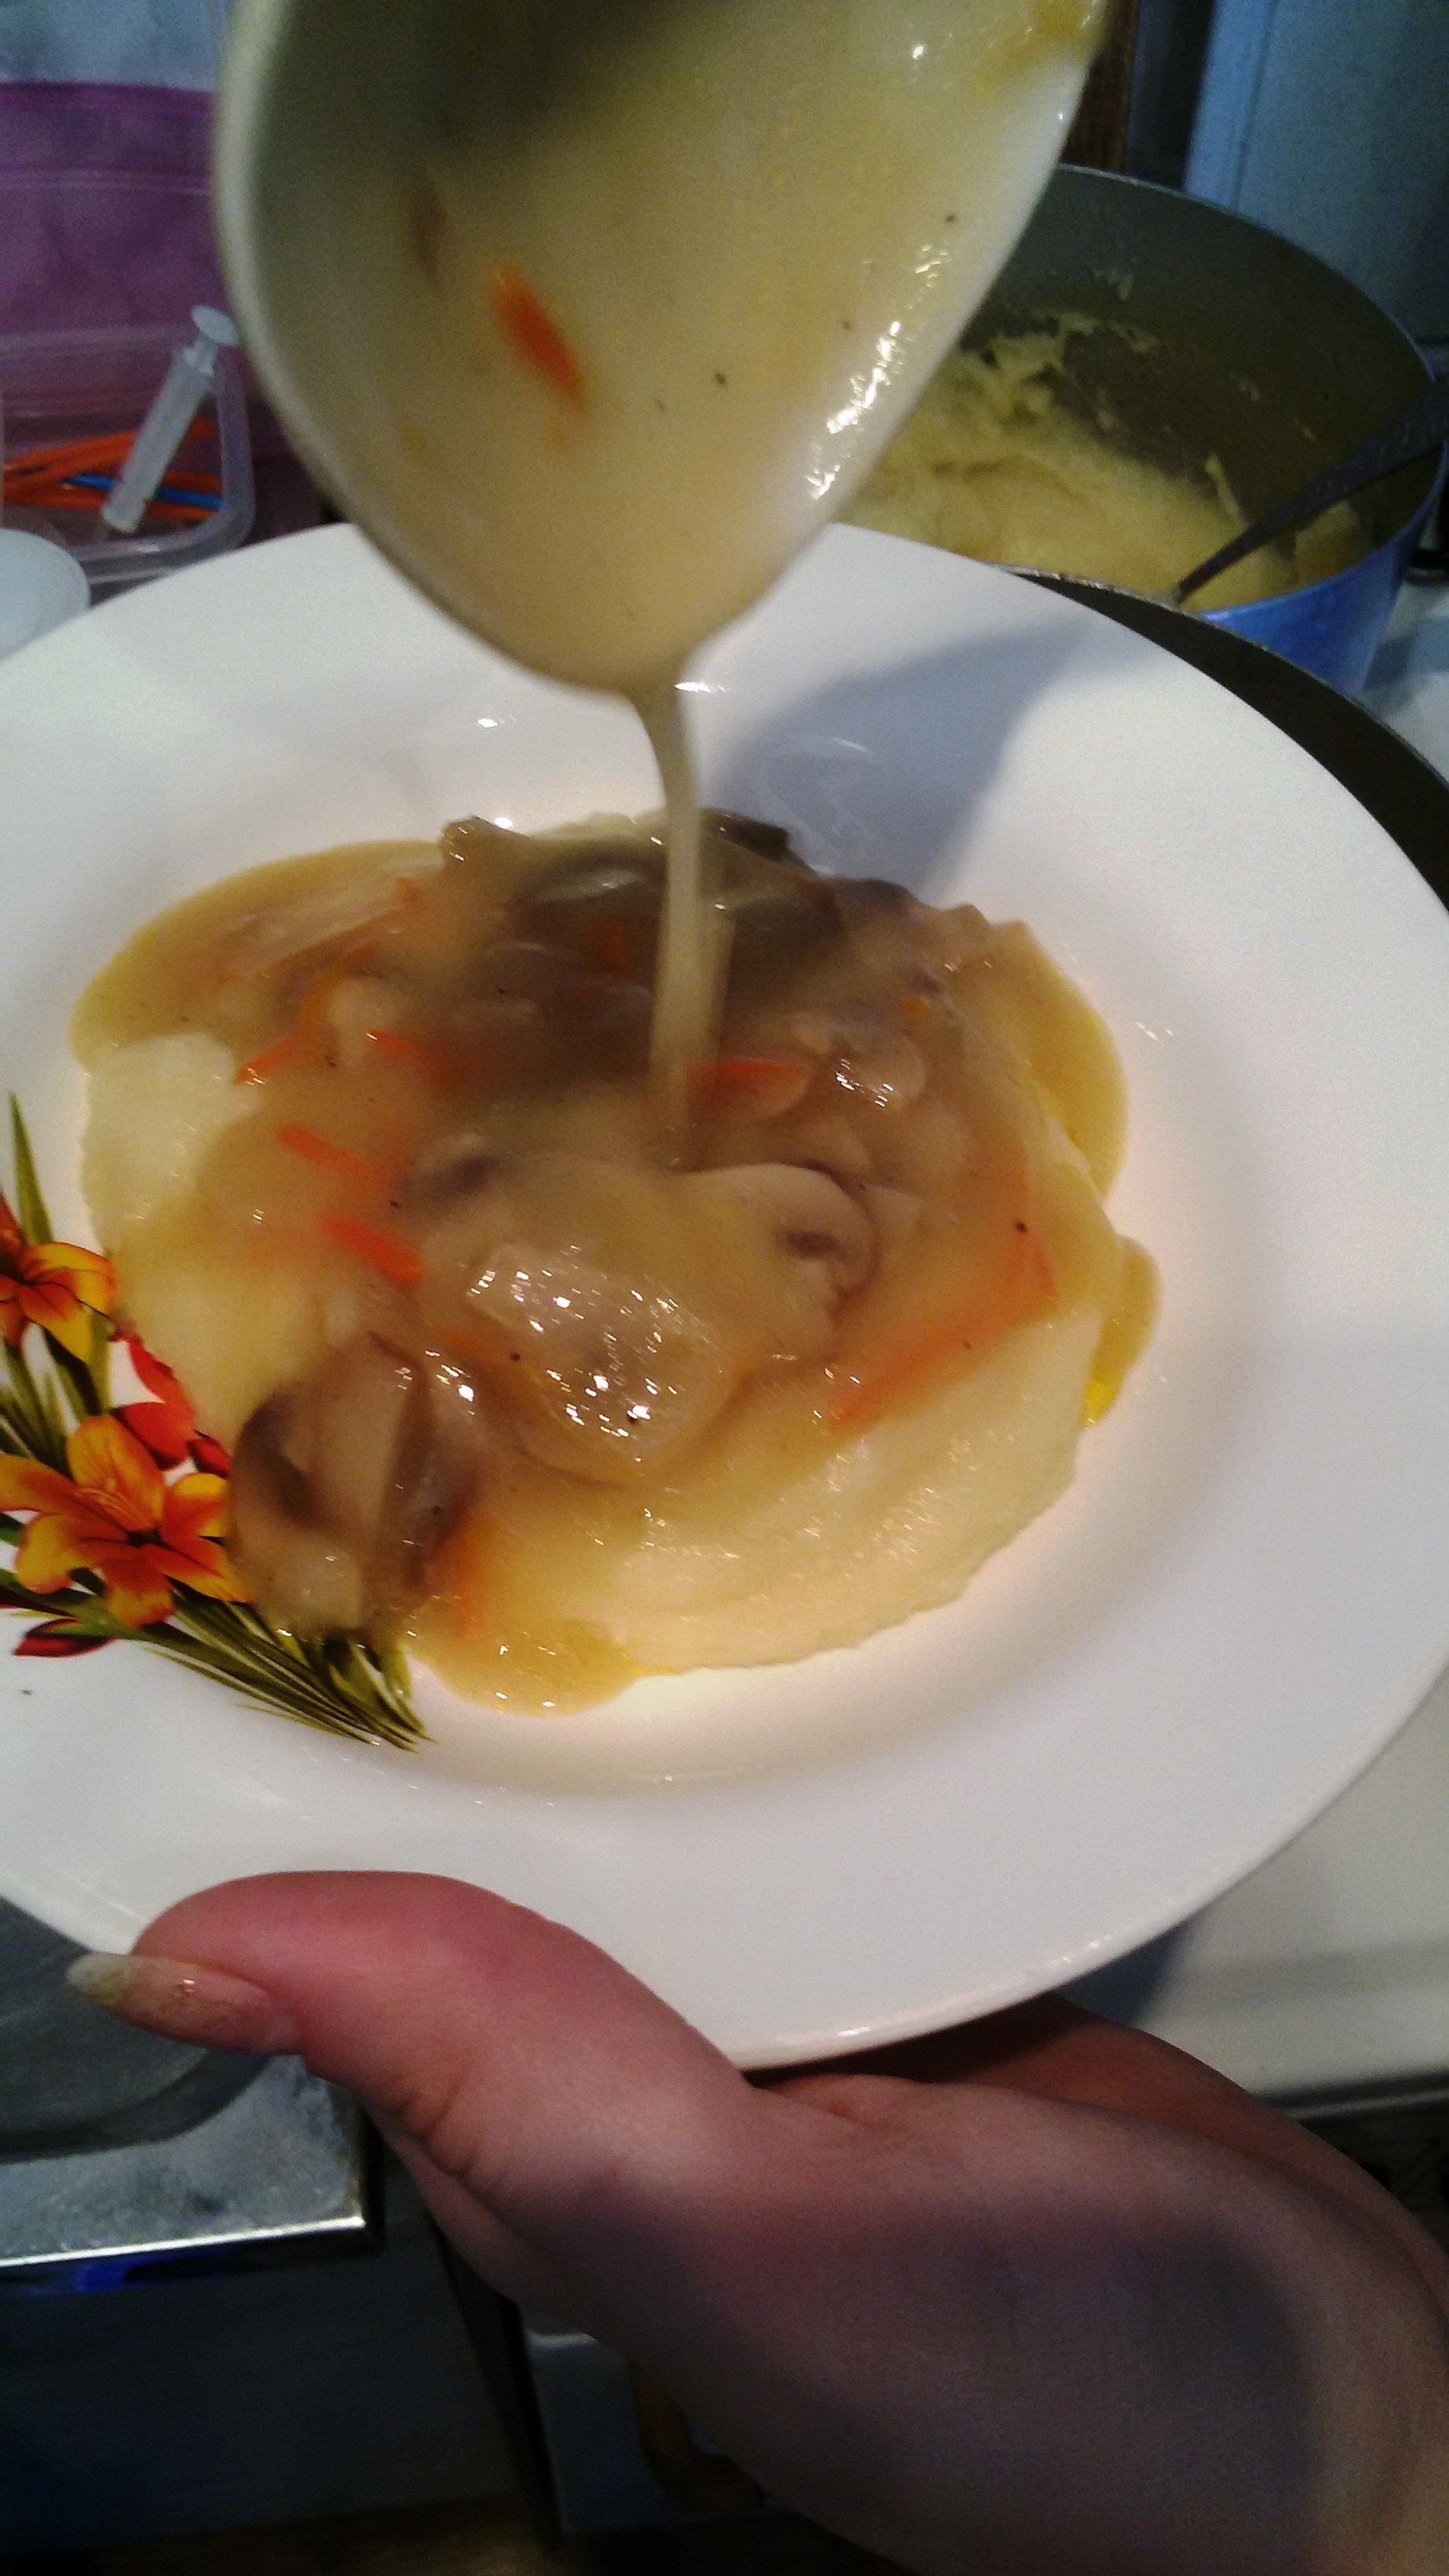 Грибной соус из шампиньонов со сливками рецепт – Шведская кухня: Соусы и маринады. «Еда»